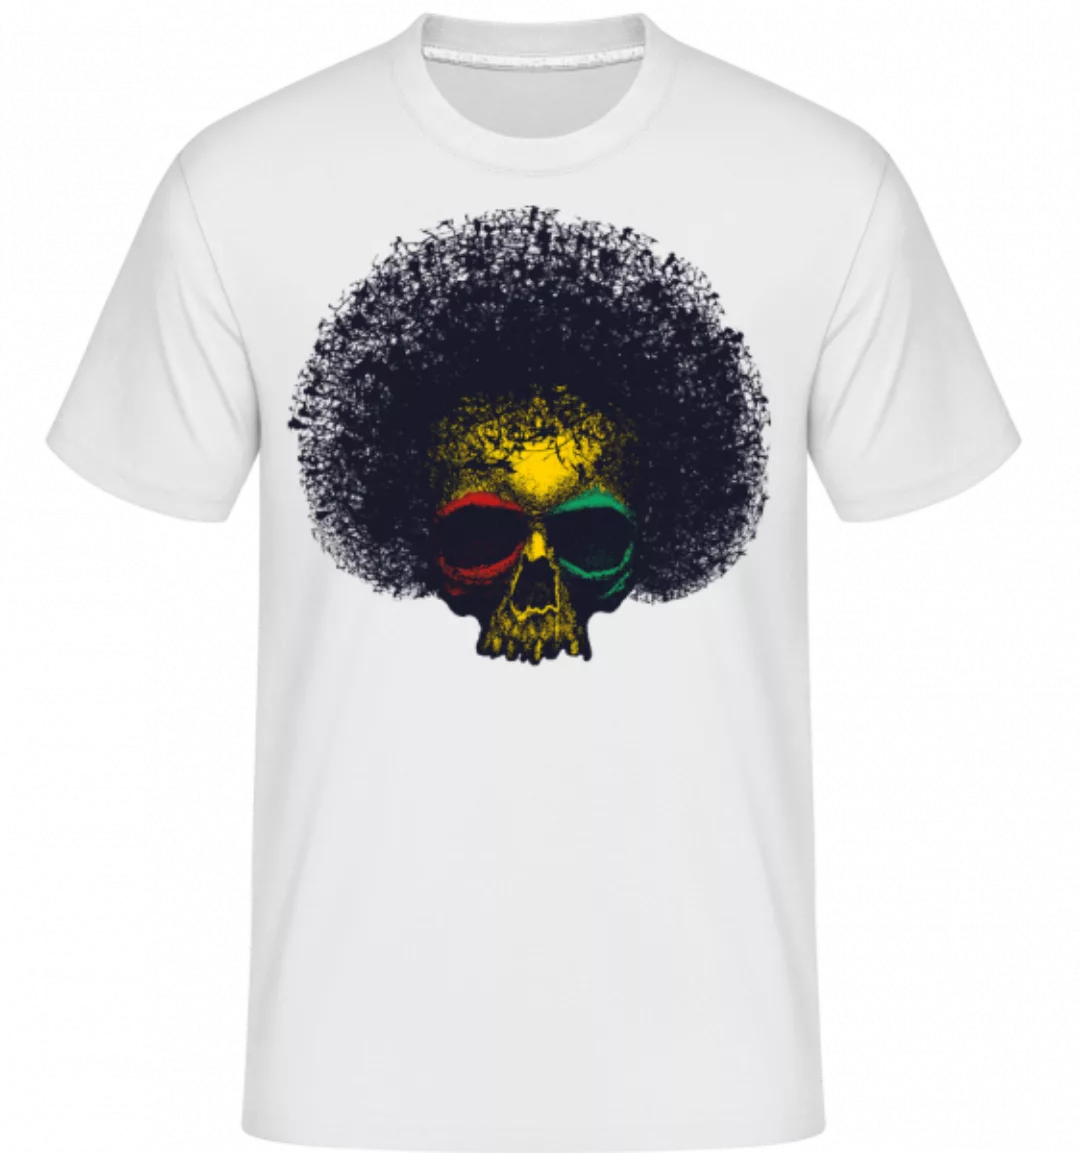 Reggae Schädel · Shirtinator Männer T-Shirt günstig online kaufen